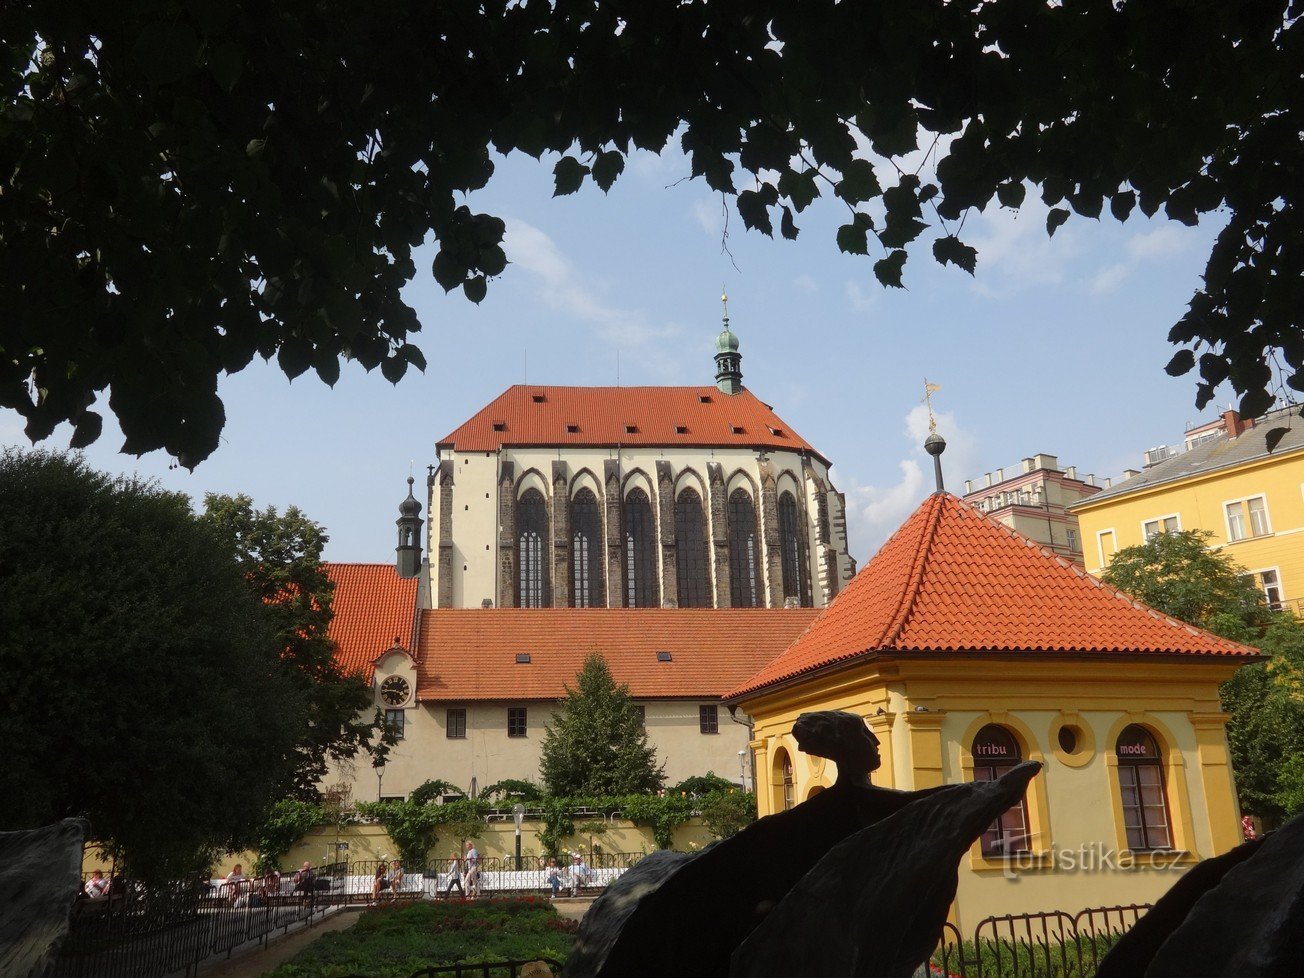 Gotička katedrala Gospe Snježne - najviša crkva s najvišim oltarom u Pragu